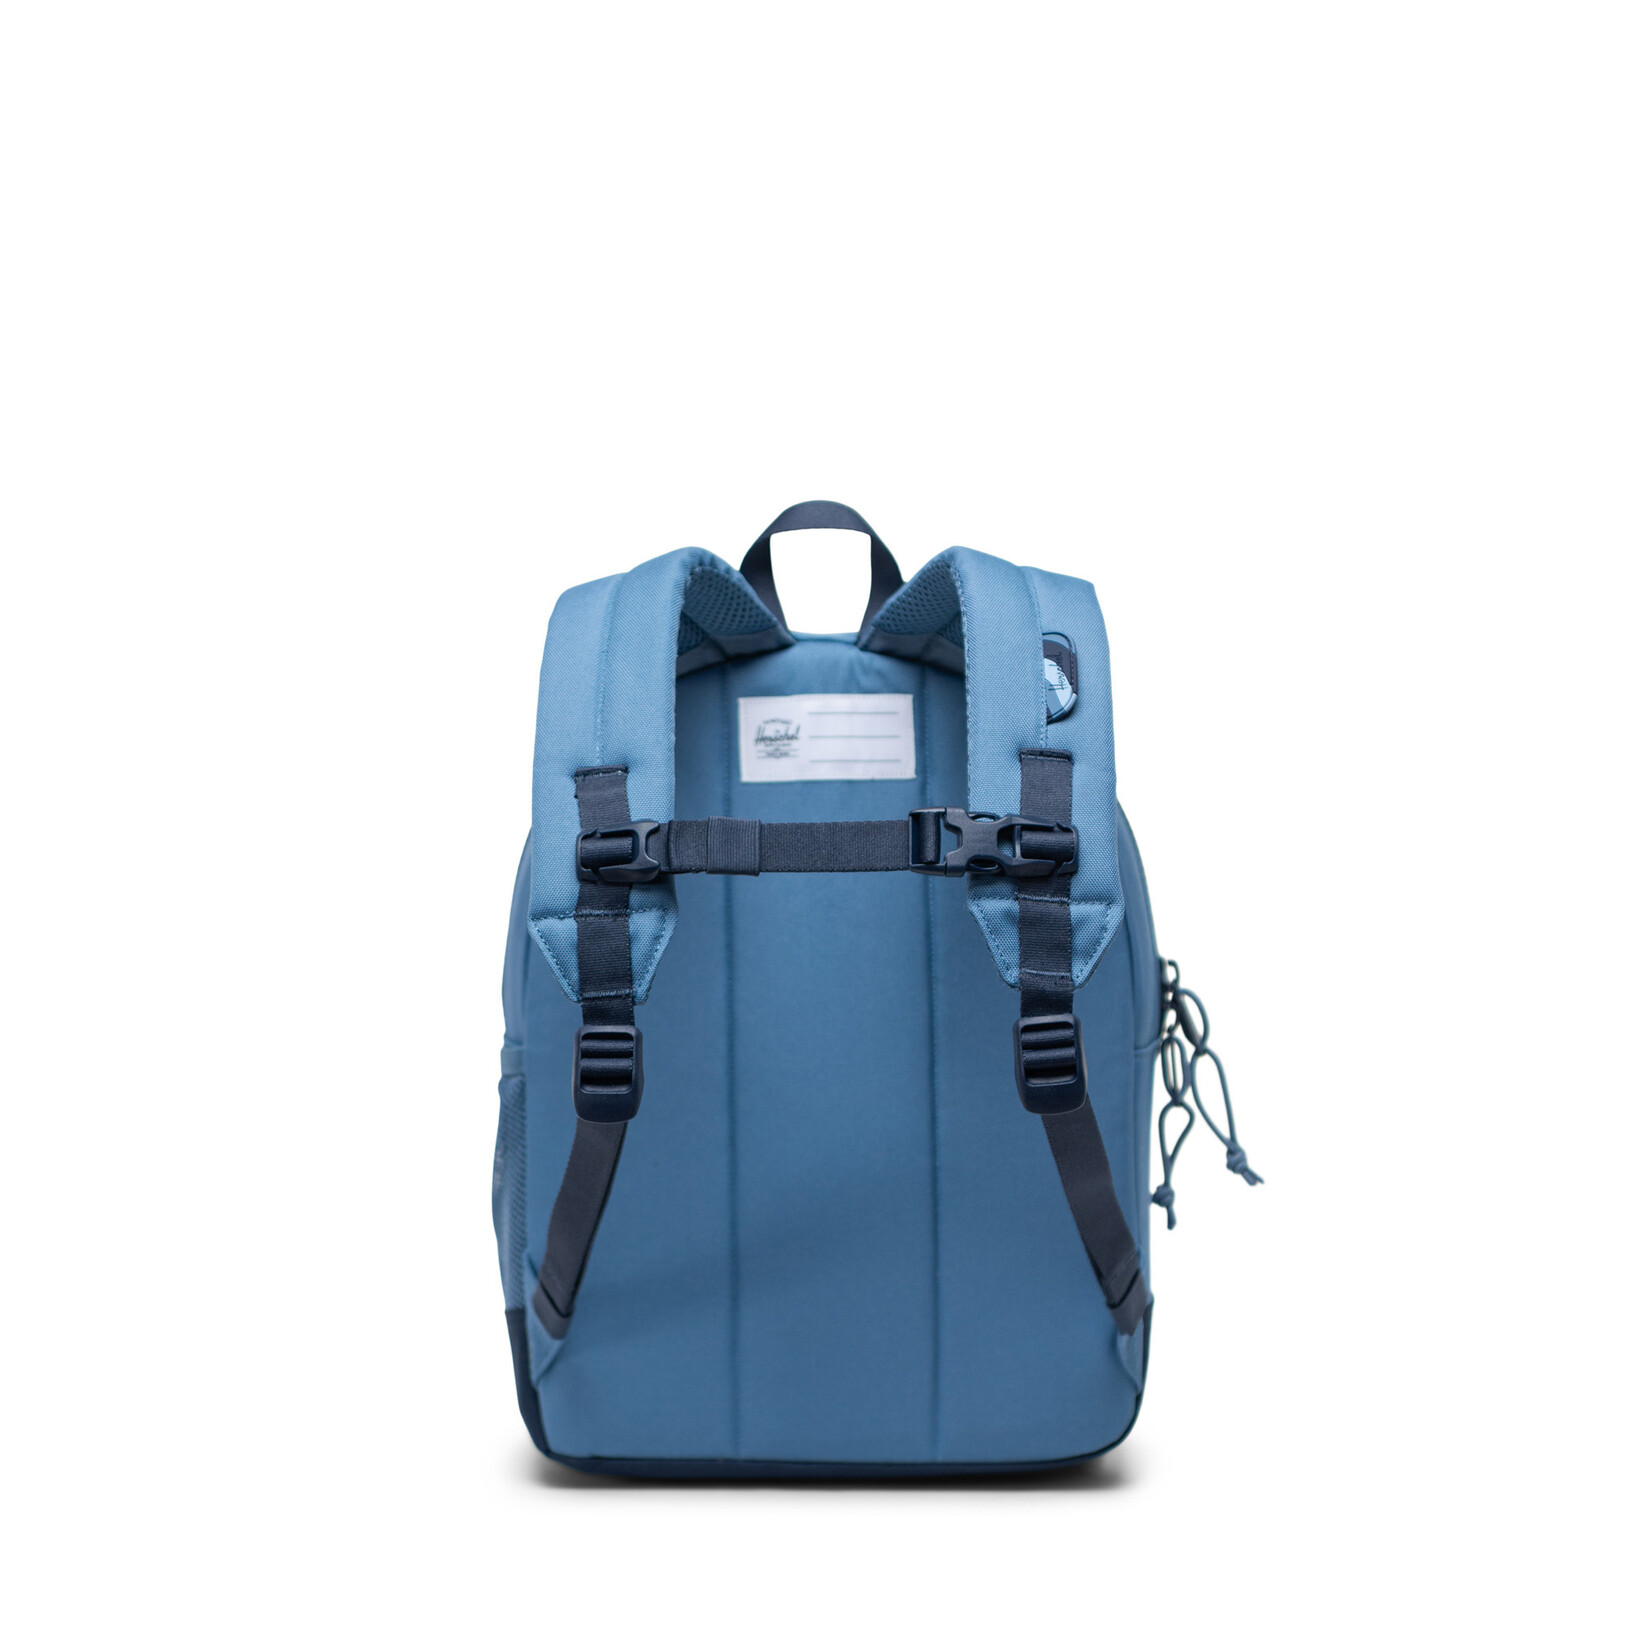 Herschel Herschel Heritage Youth Backpack Coronet Blue/Navy